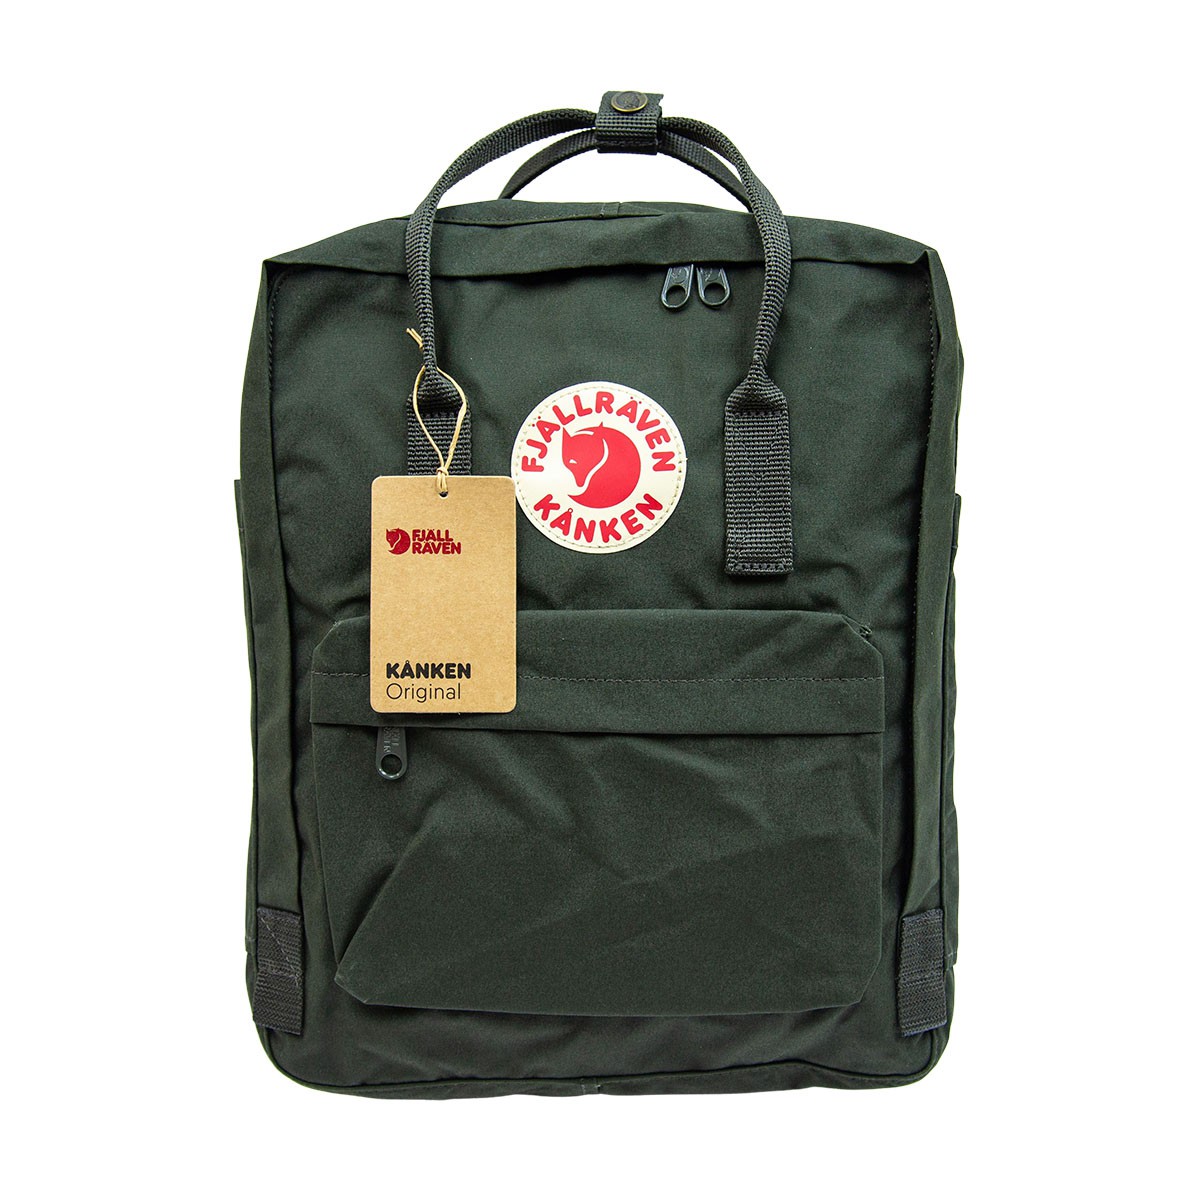 Fjallraven Kanken Classic Size 16L Backpack 背囊 背包 Deep Forest